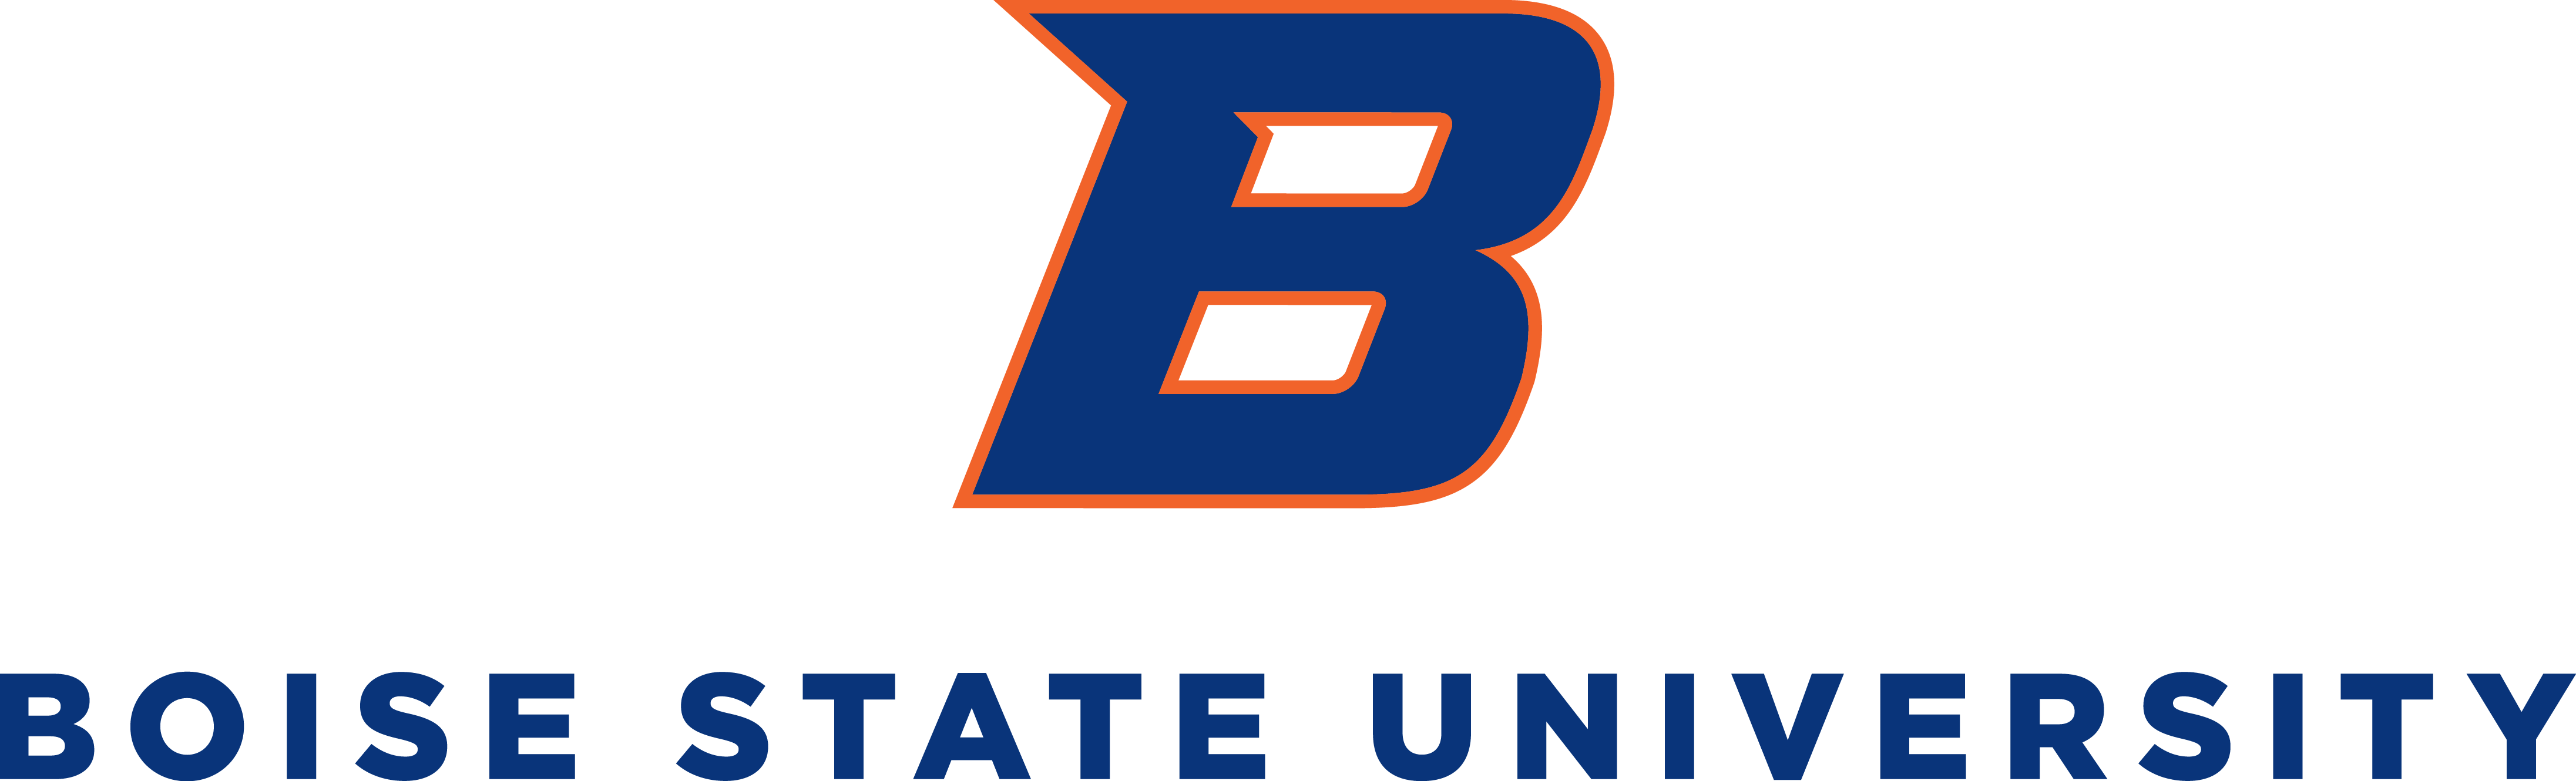 University Signature Mark, Boise State University under a B